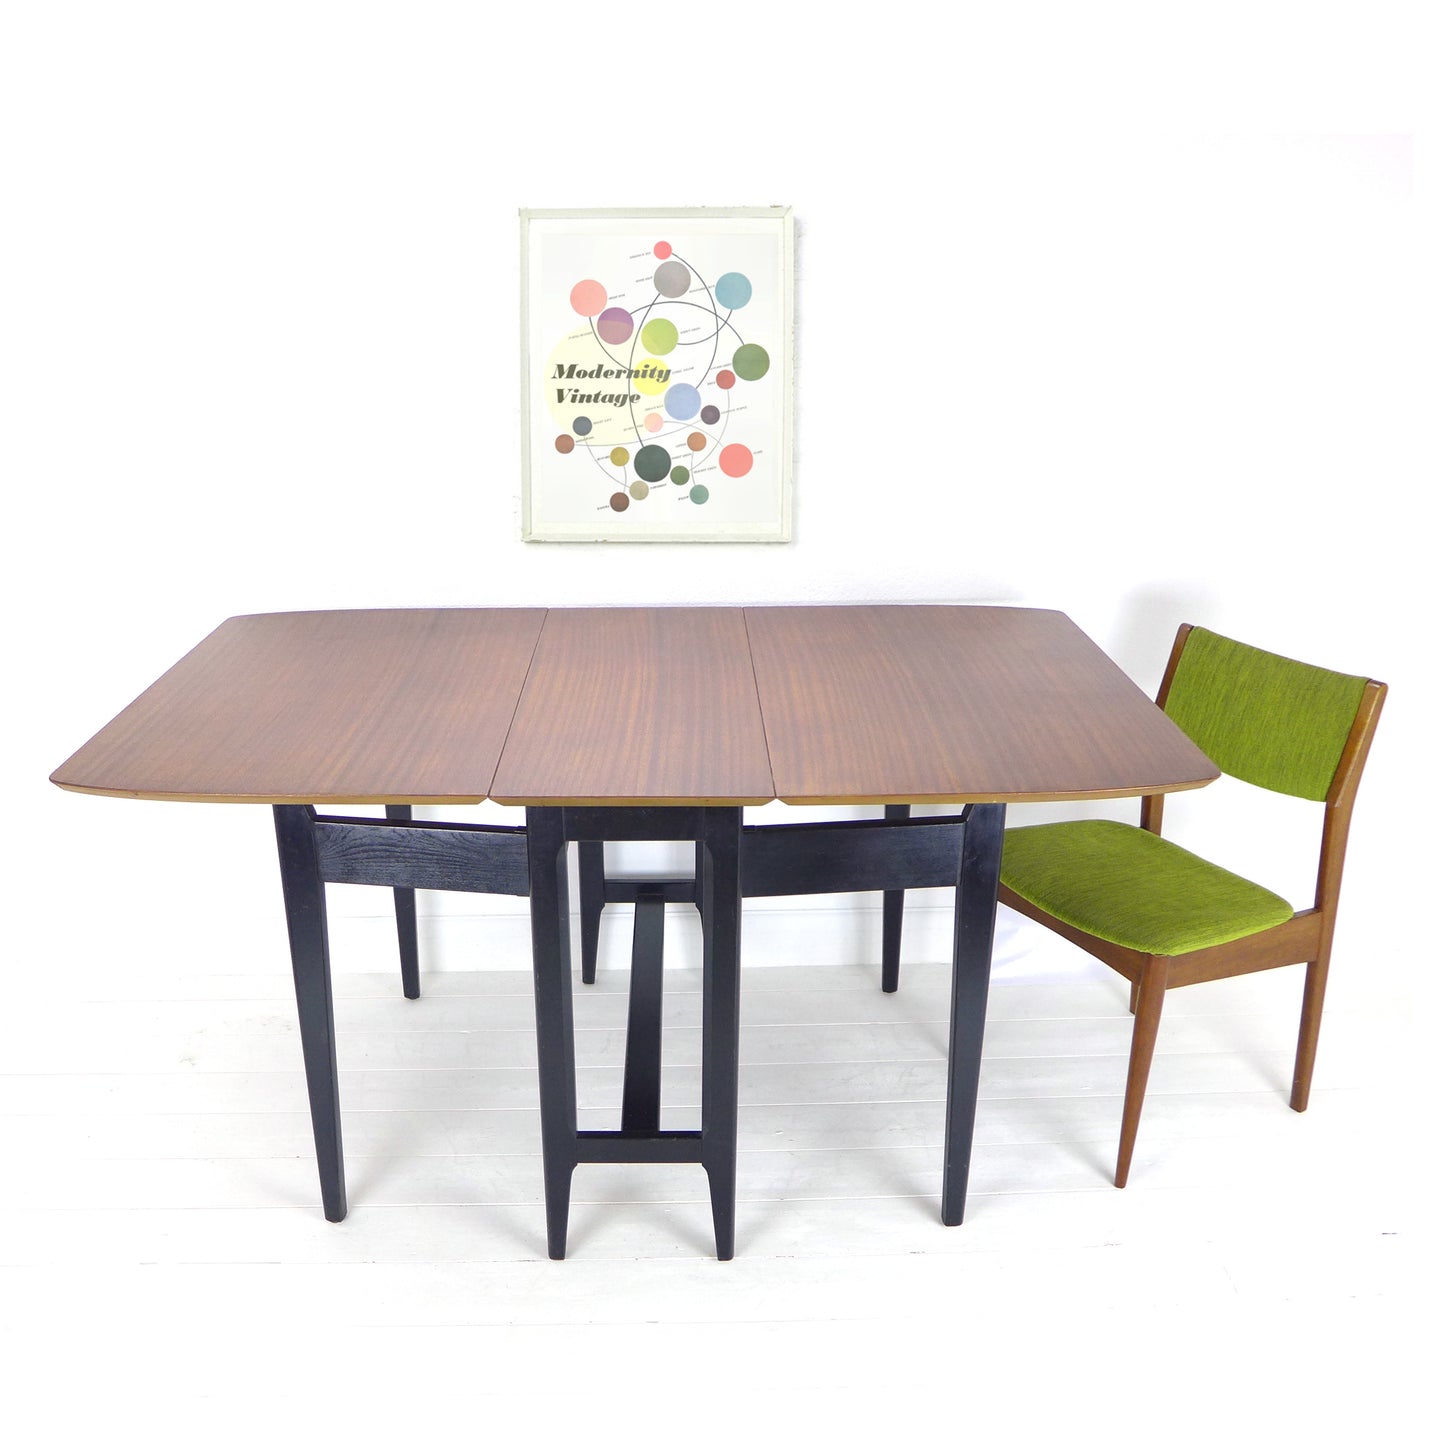 Mid Century Teak Dining Table in Teak - Gateleg/Folding - Kitchen/Home Office